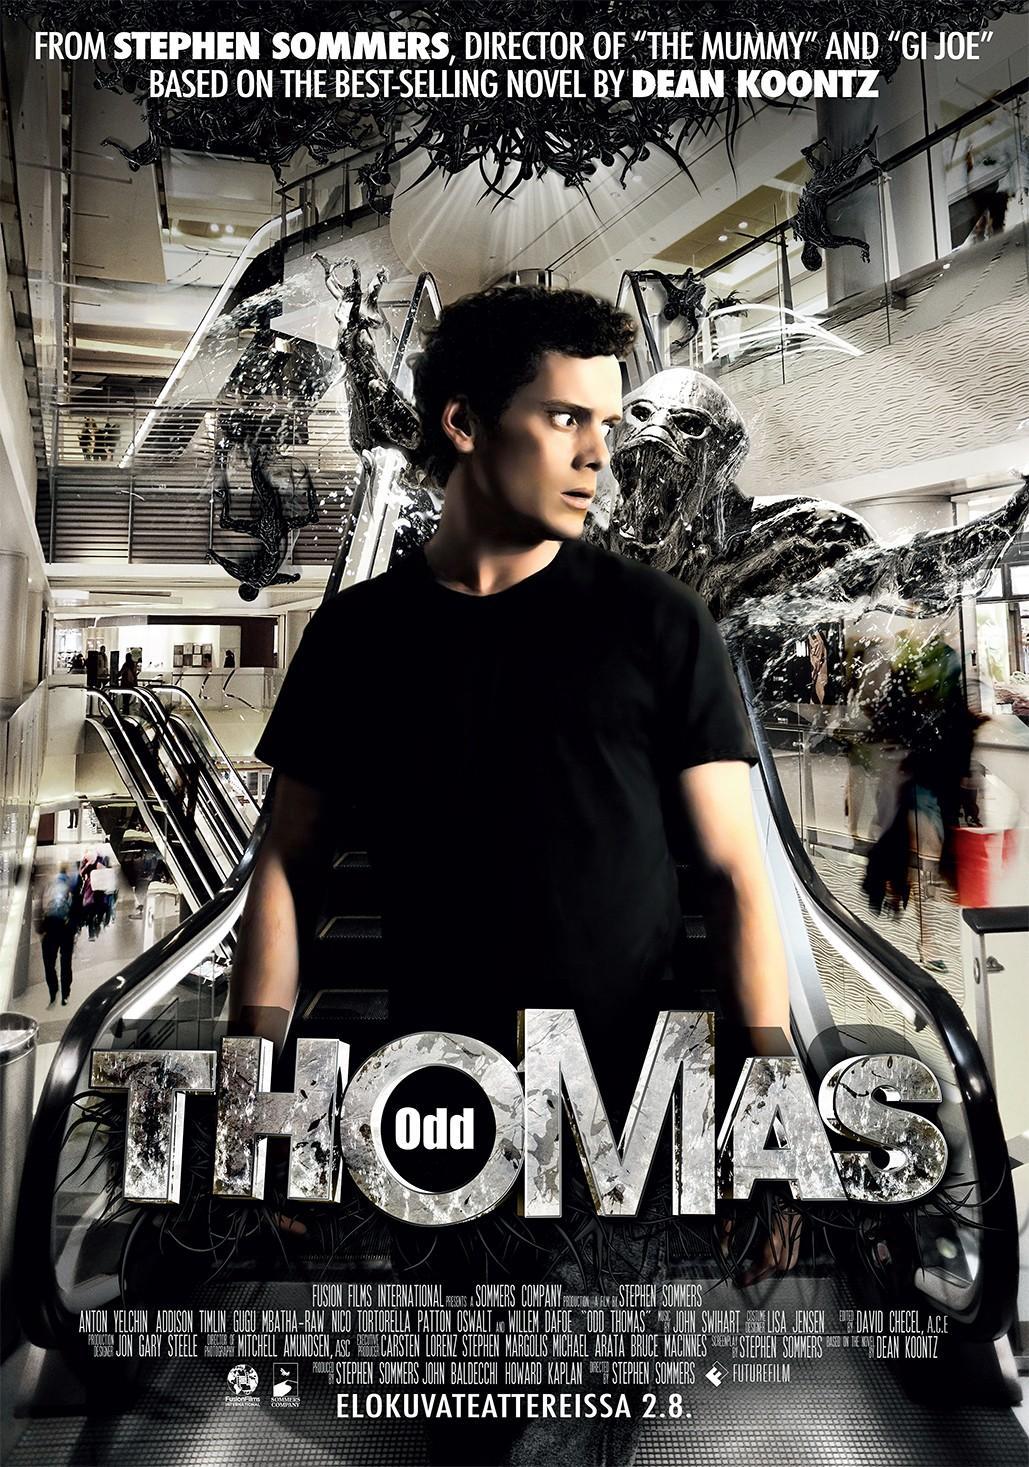 Постер фильма Странный Томас | Odd Thomas